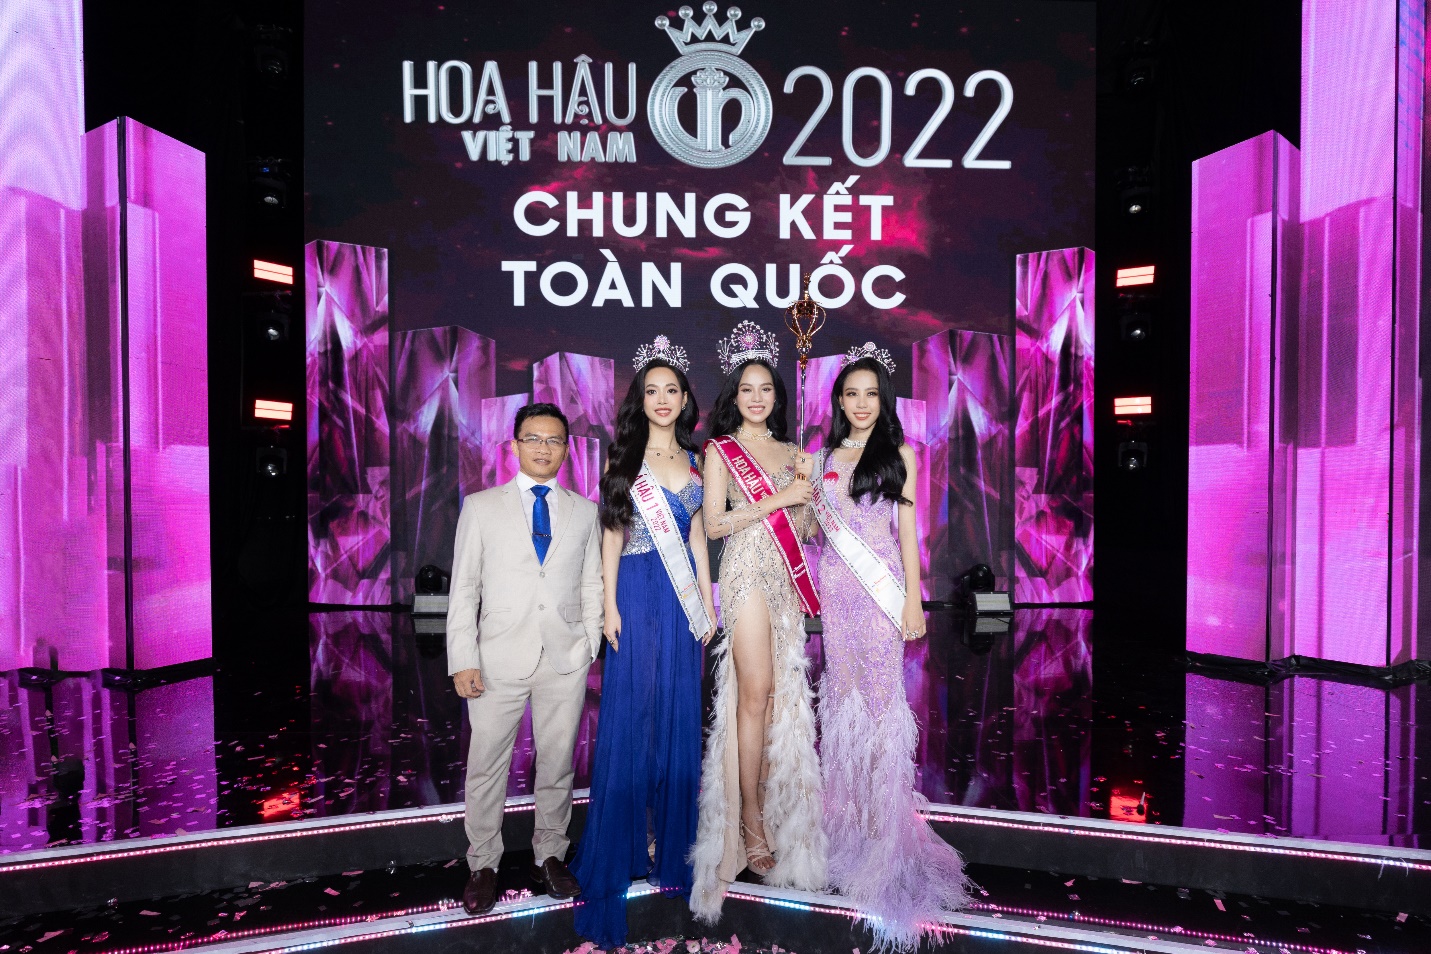 ION GOLD cùng Top 3 Hoa hậu Việt Nam 2022 chinh phục chặng đường mới - Ảnh 4.